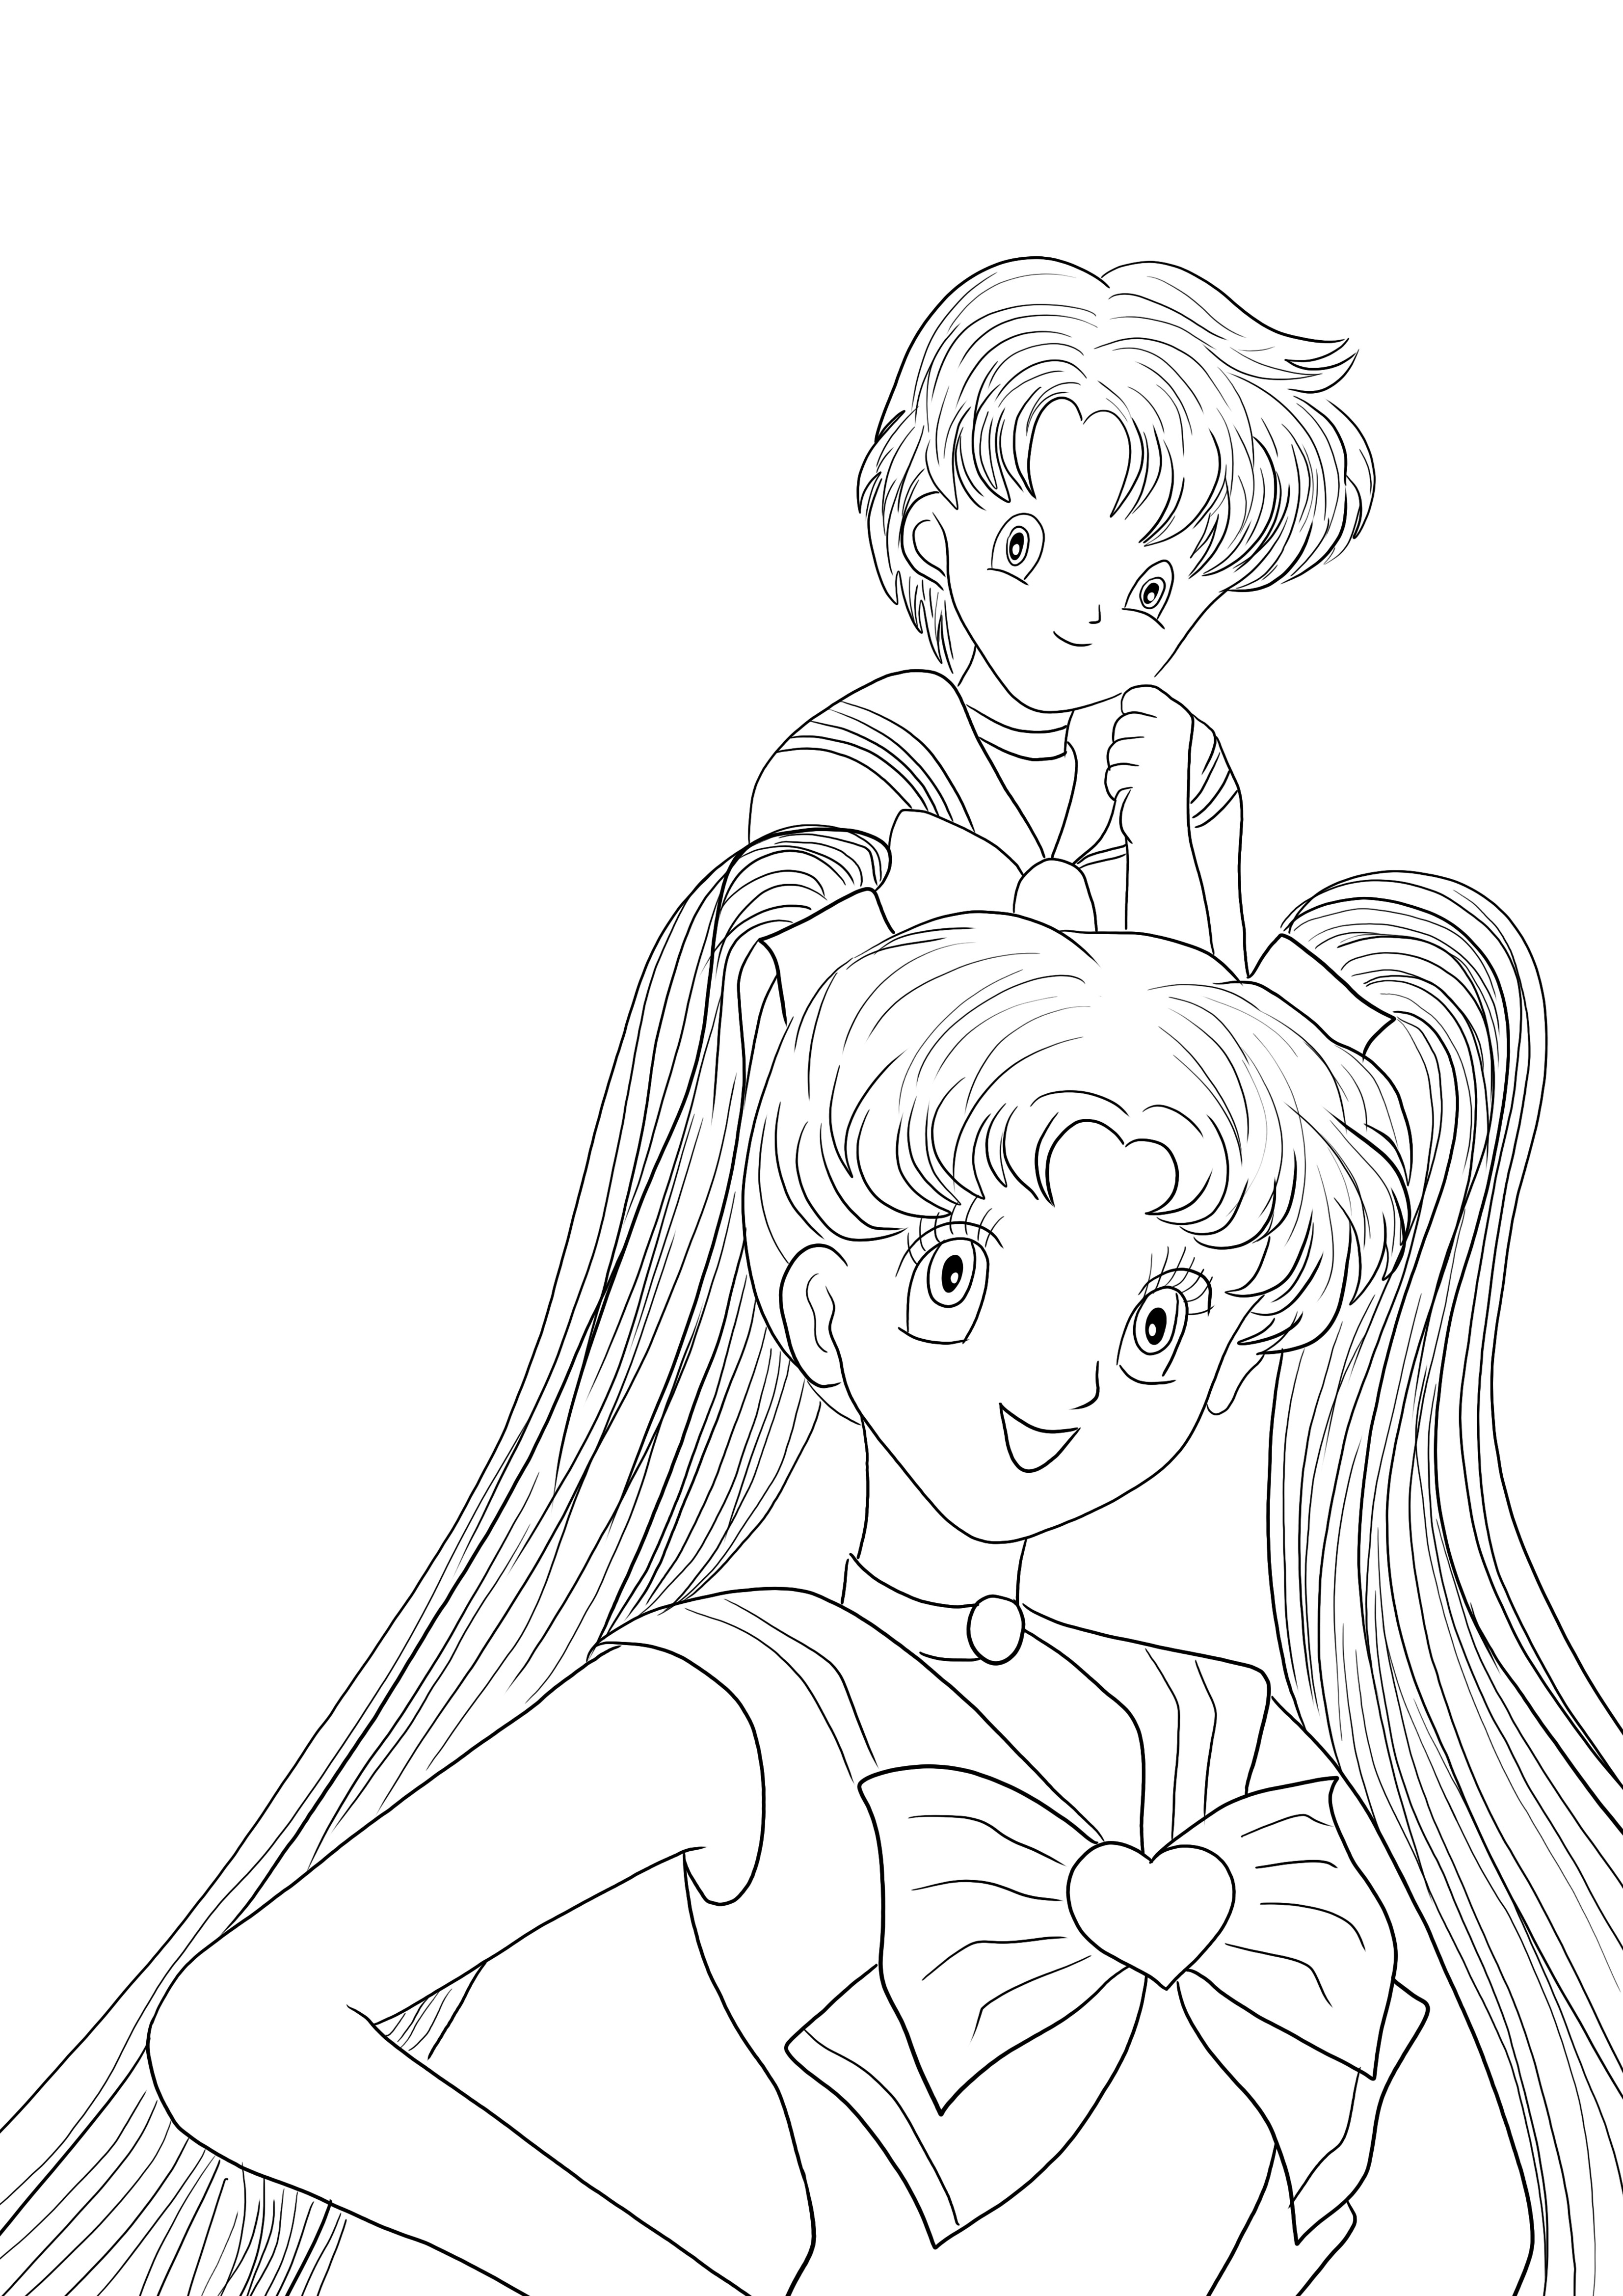 Tässä on ilmaiseksi ladattava Sailor Moon Girls -värjäysarkki lasten värittämiseksi